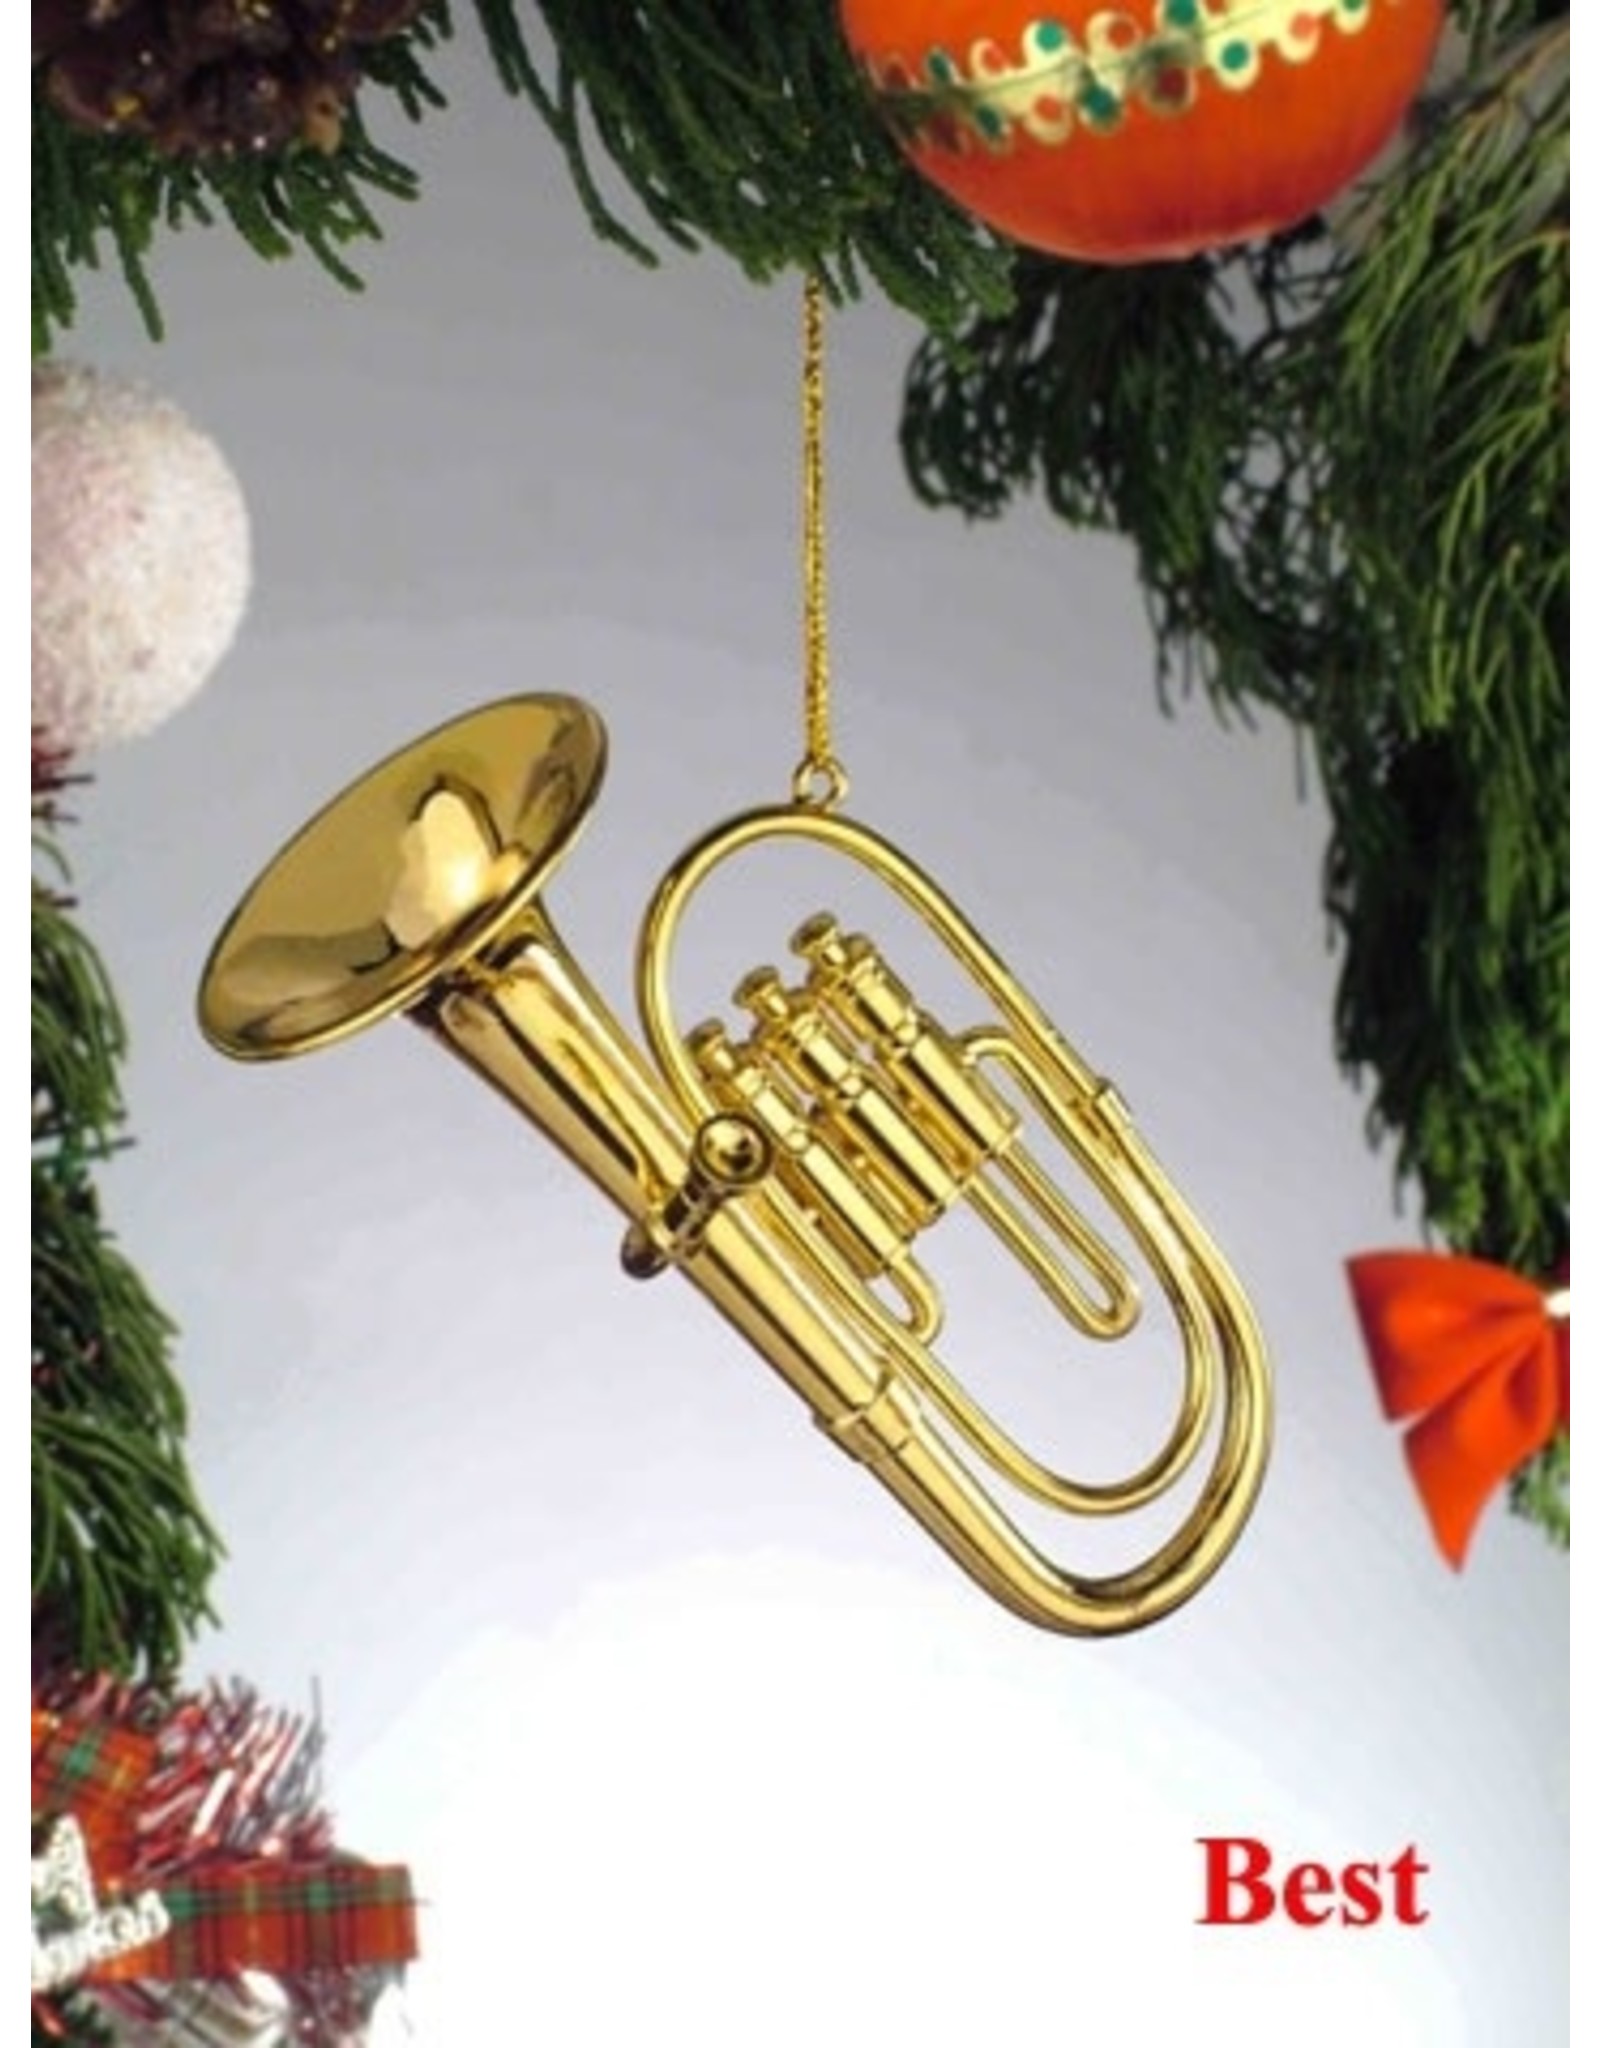 Broadway Gift Co Baritone Tuba Ornament